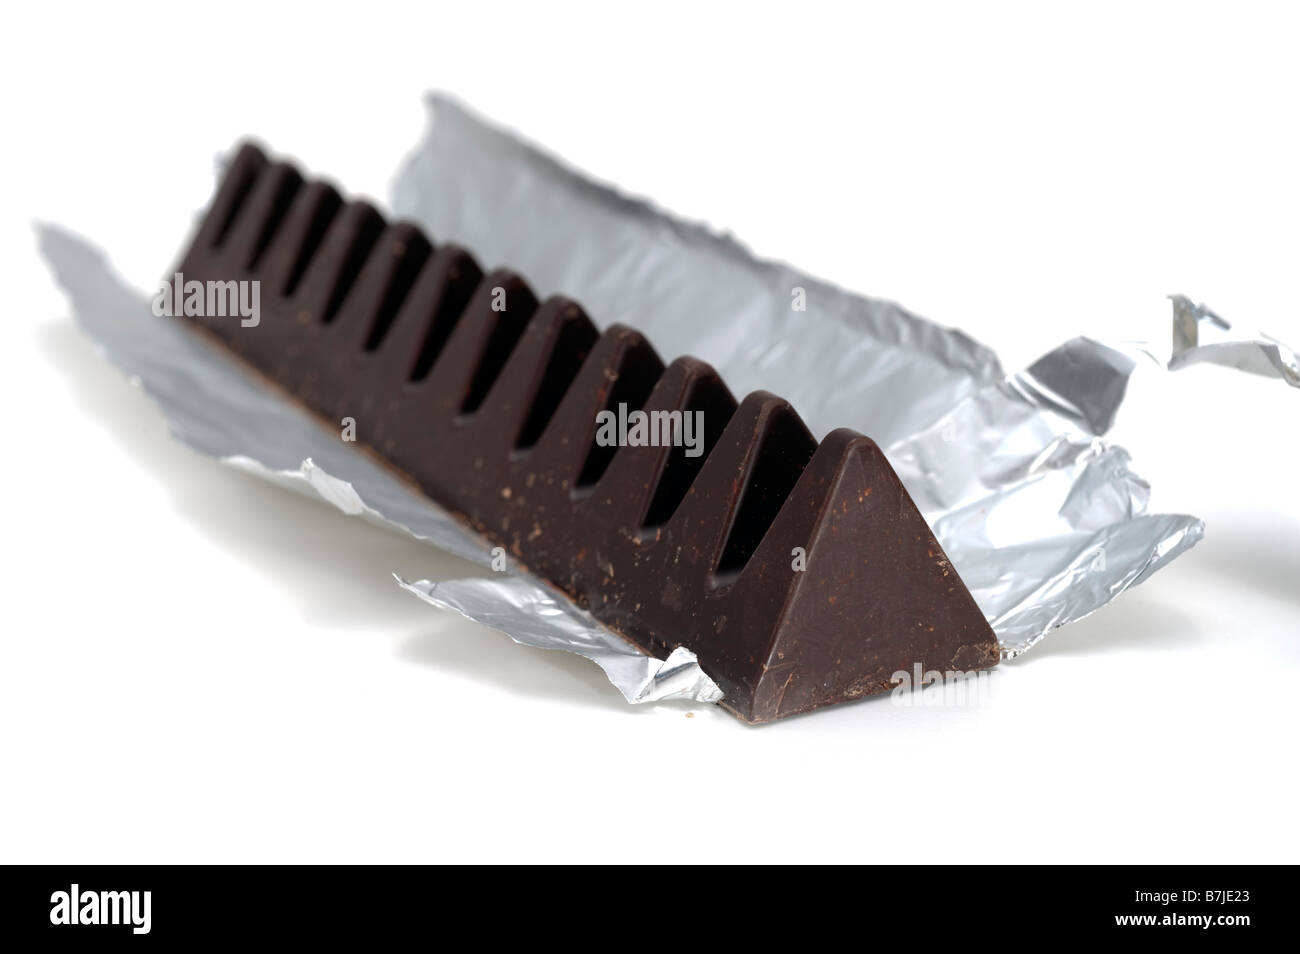 Barre de chocolat noir de forme triangulaire en feuille d'argent Banque D'Images